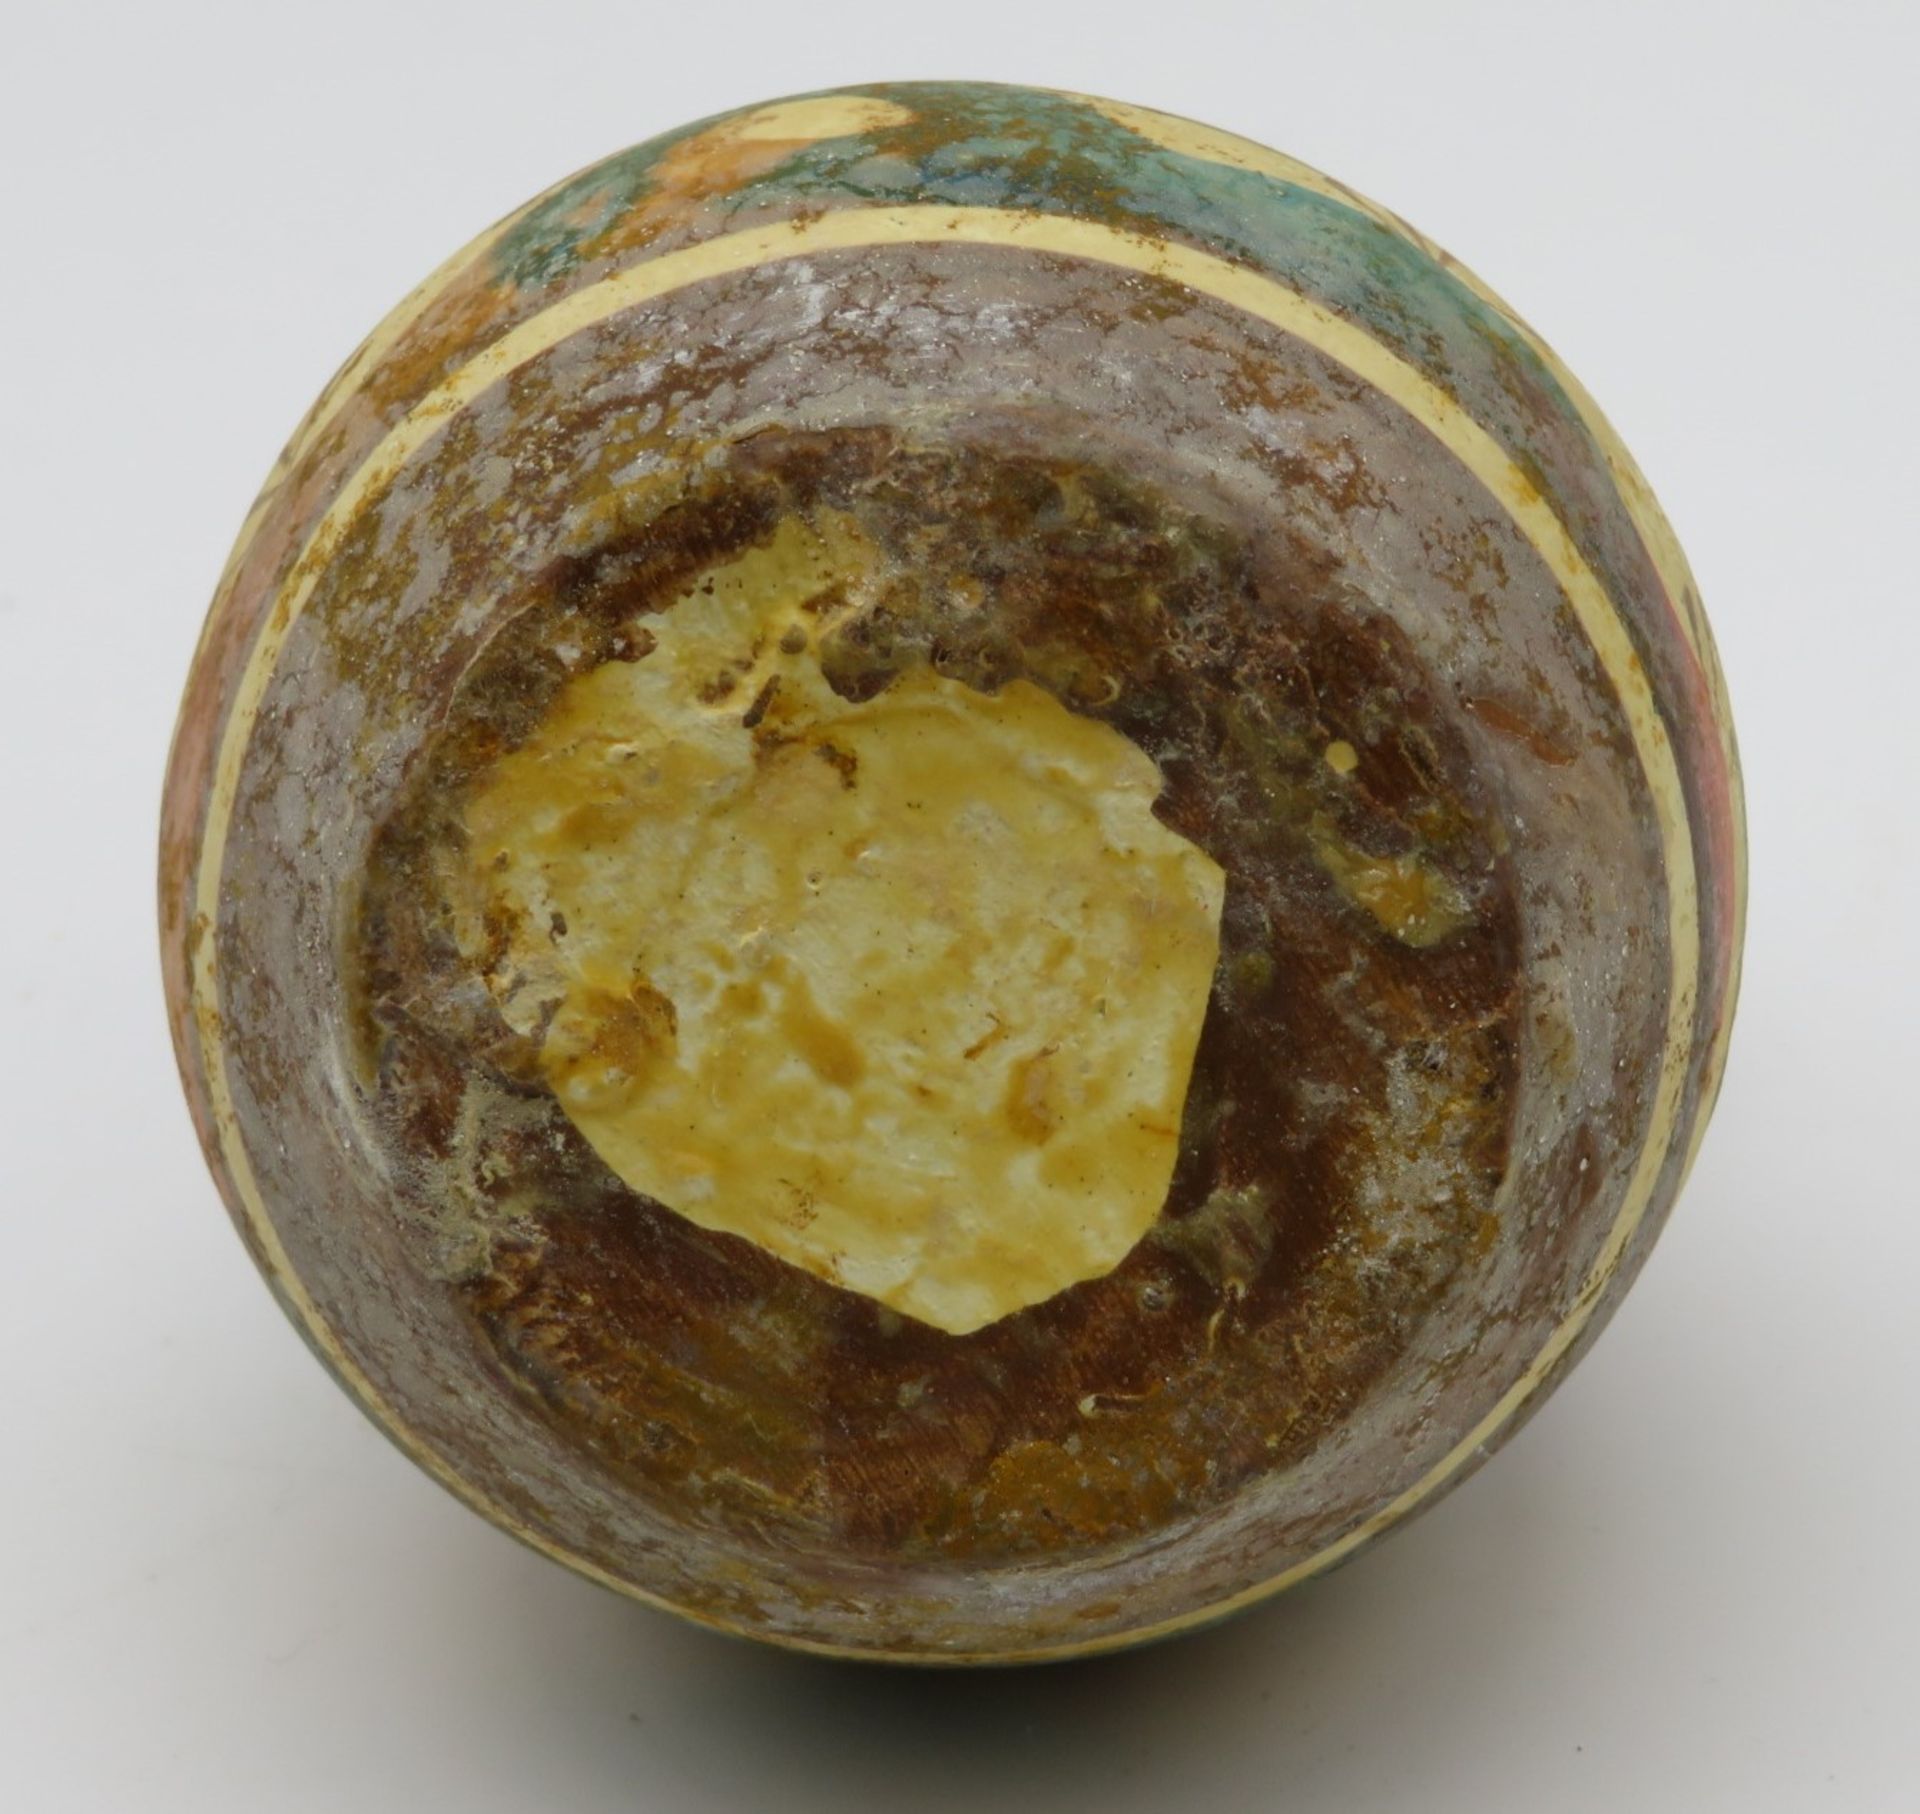 Vase mit 2 seitlichen Handhaben, Griechenland, Ton mit polychromer Bemalung, h 9 cm, d 8 cm. - Bild 2 aus 2